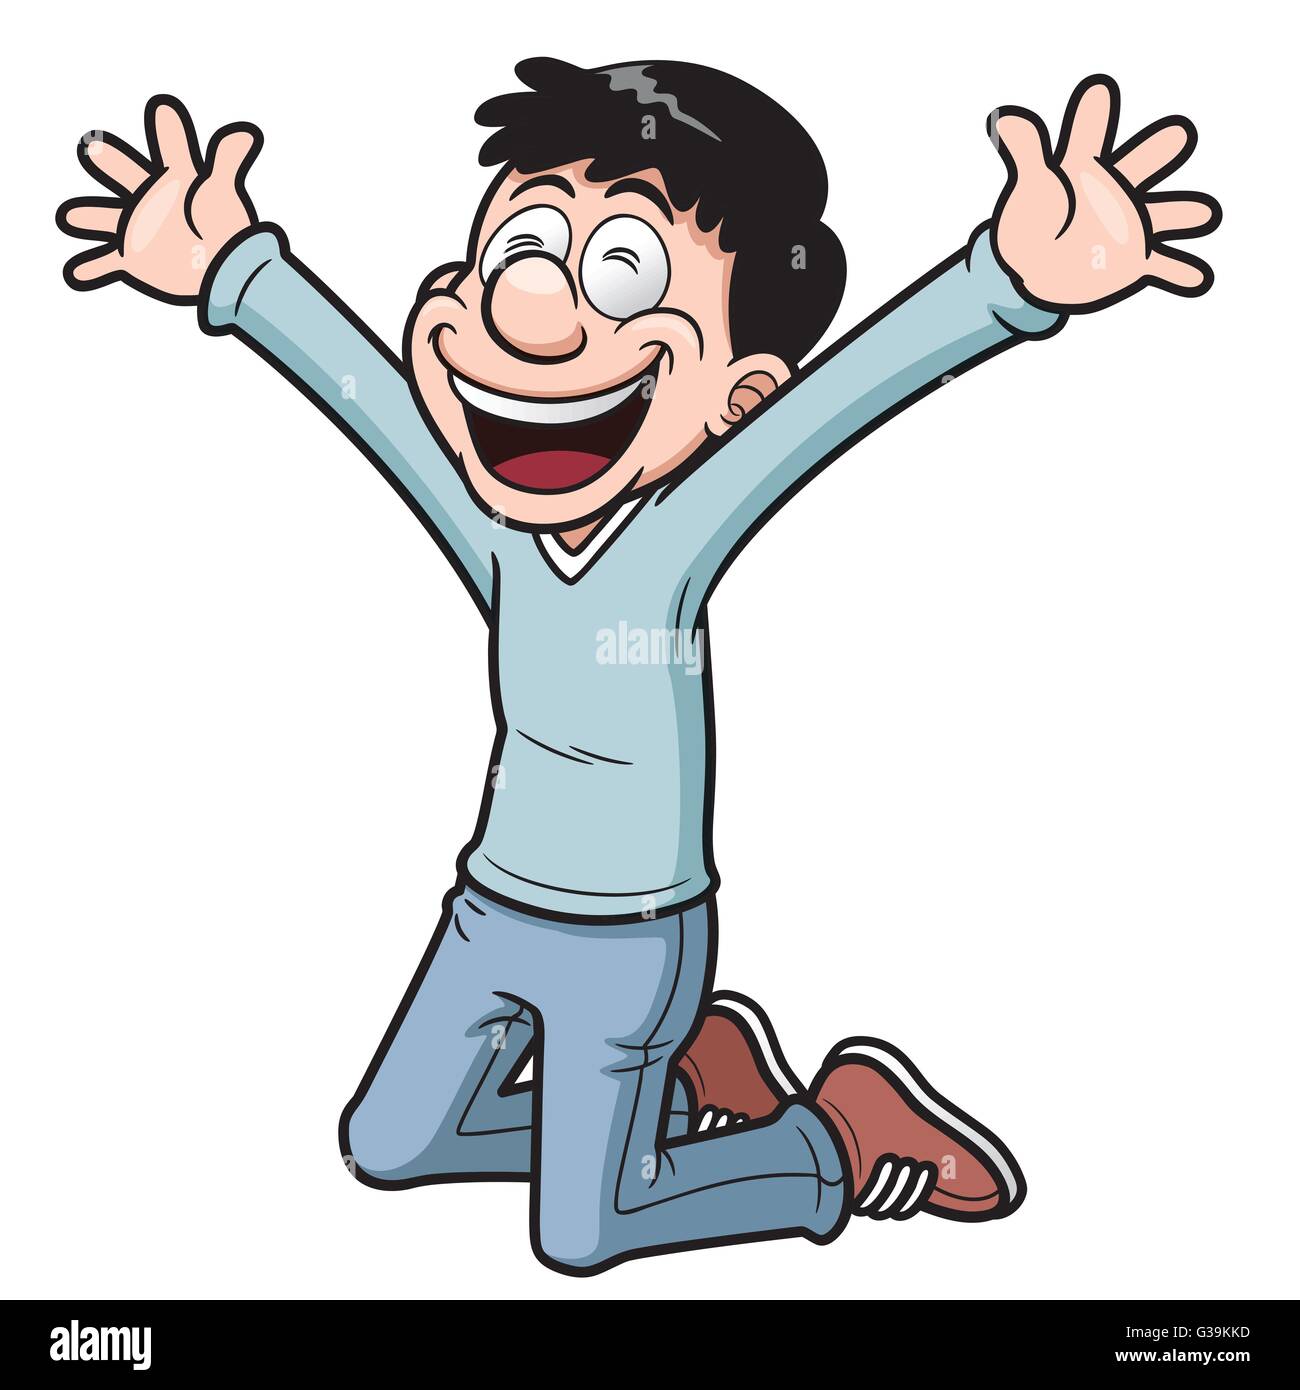 Vektor-Illustration von glücklicher Mann Cartoon Stock Vektor